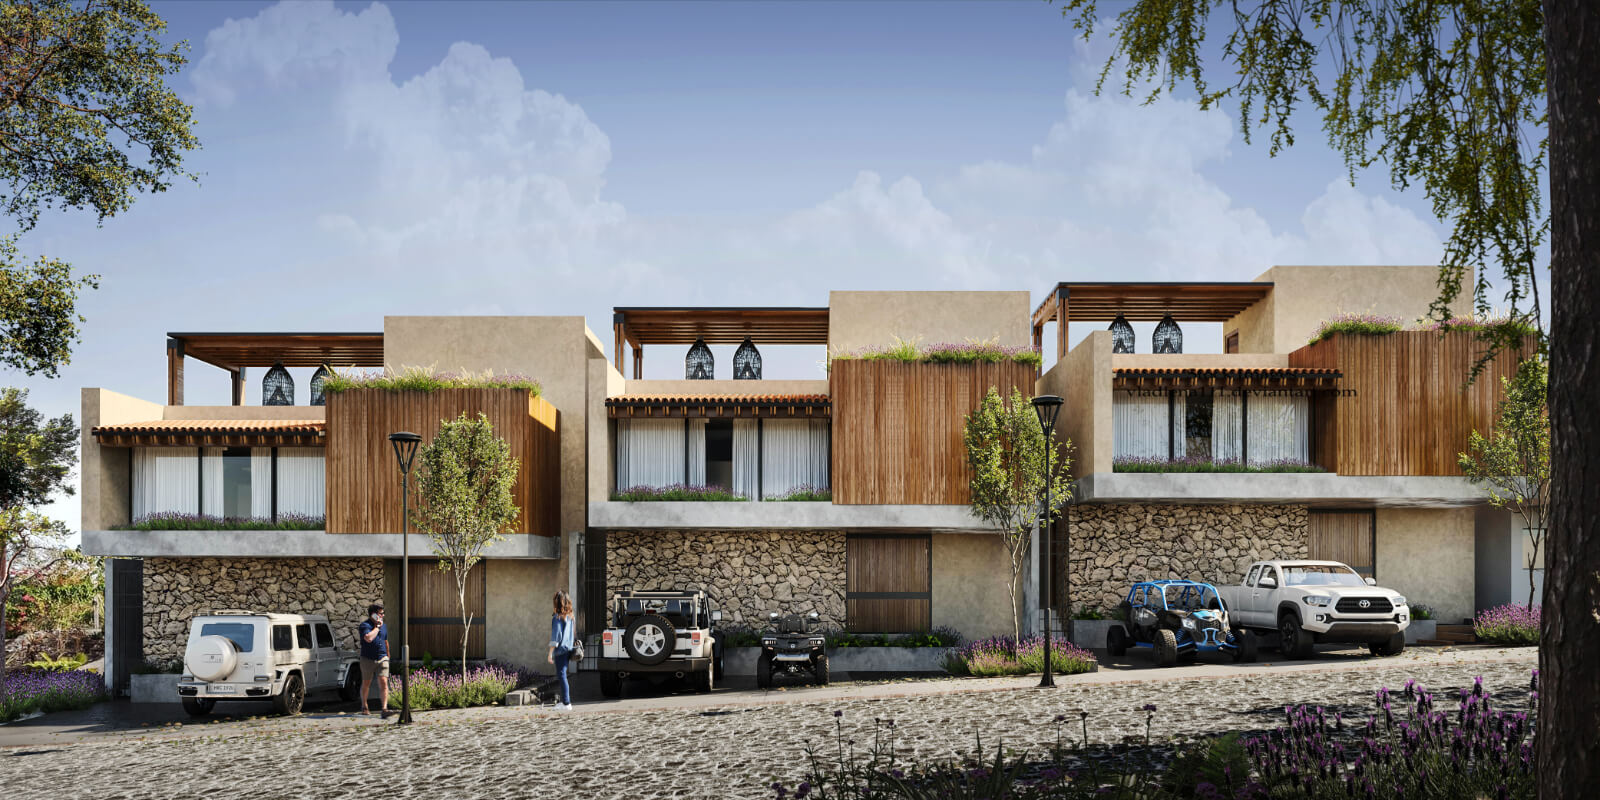 Villa con roof garden, terraza con asador, estacionamiento para 3 autos, casa club, cine,alberca, jacuzzi, pre-construccion, en venta